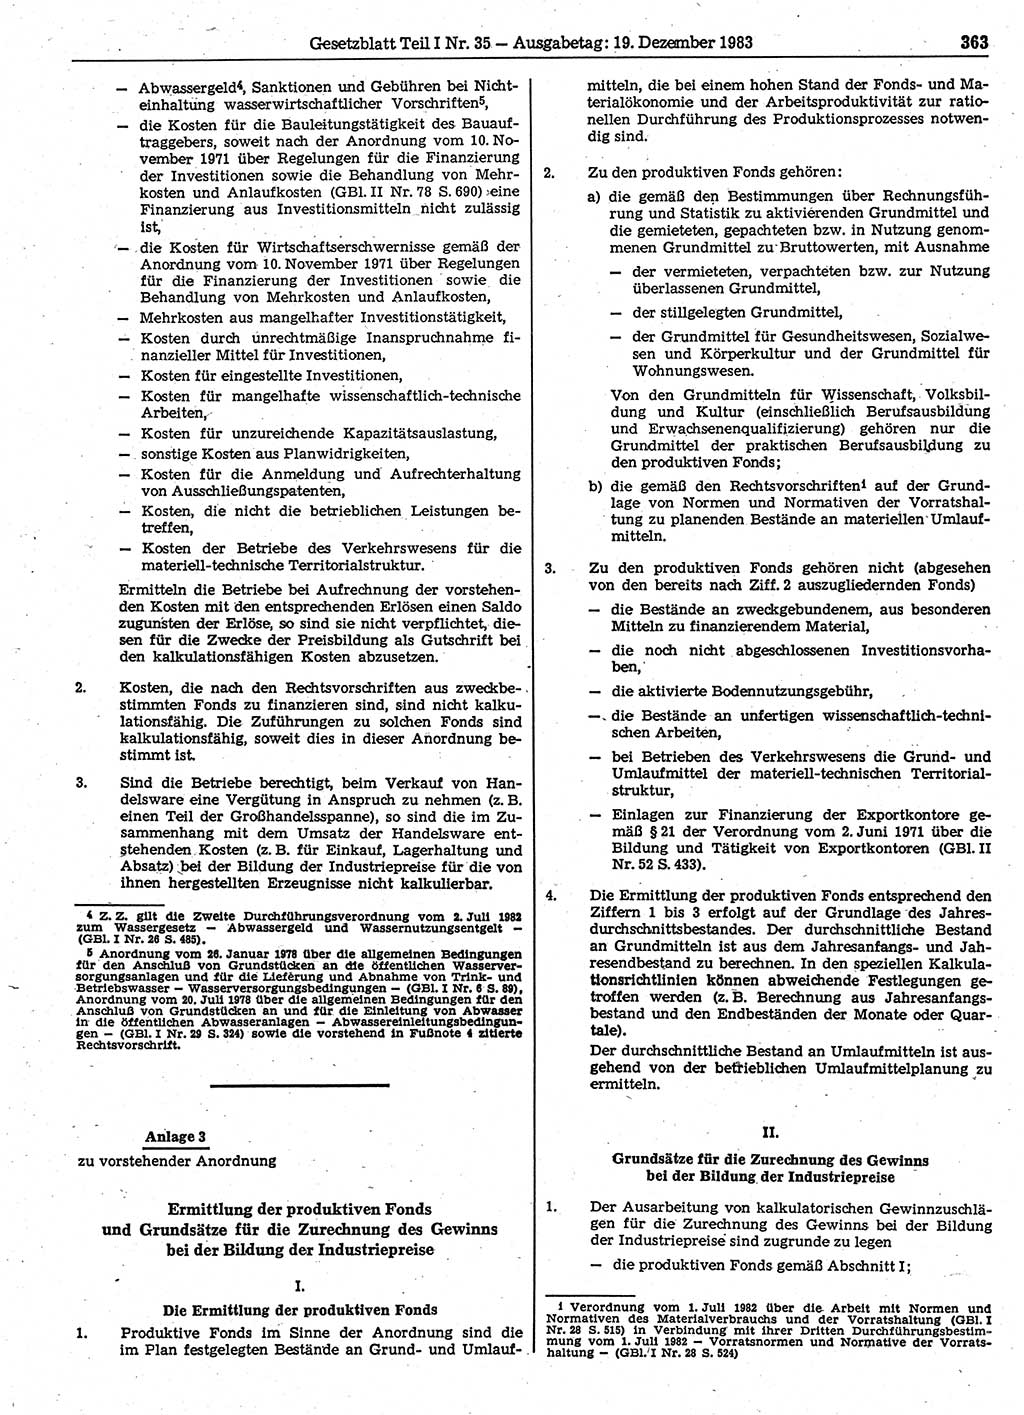 Gesetzblatt (GBl.) der Deutschen Demokratischen Republik (DDR) Teil Ⅰ 1983, Seite 363 (GBl. DDR Ⅰ 1983, S. 363)